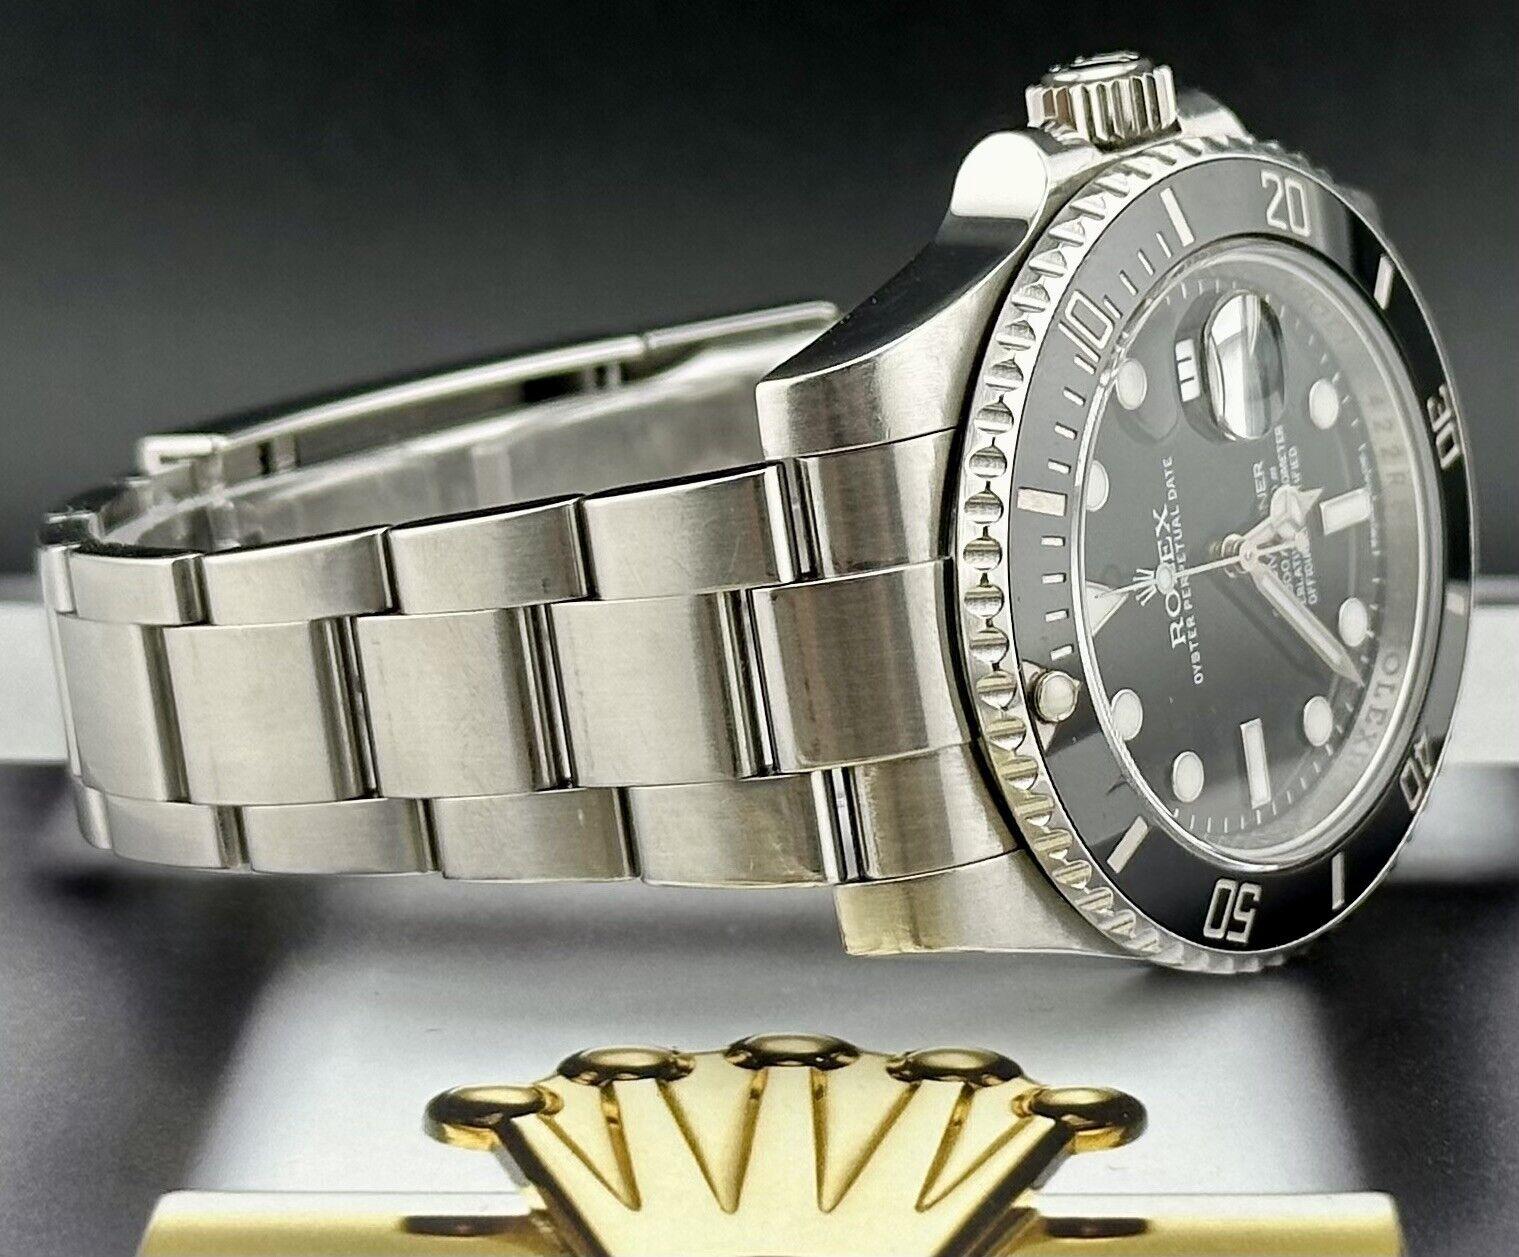 Rolex Submariner Date 40mm Uhr. Ein Pre-owned Uhr w / Original-Box und 2013 Karte. Uhr ist 100% authentisch und kommt mit Echtheitskarte. Watch Reference ist 116610LN und ist in ausgezeichnetem Zustand (siehe Bilder). Die Farbe des Zifferblatts ist